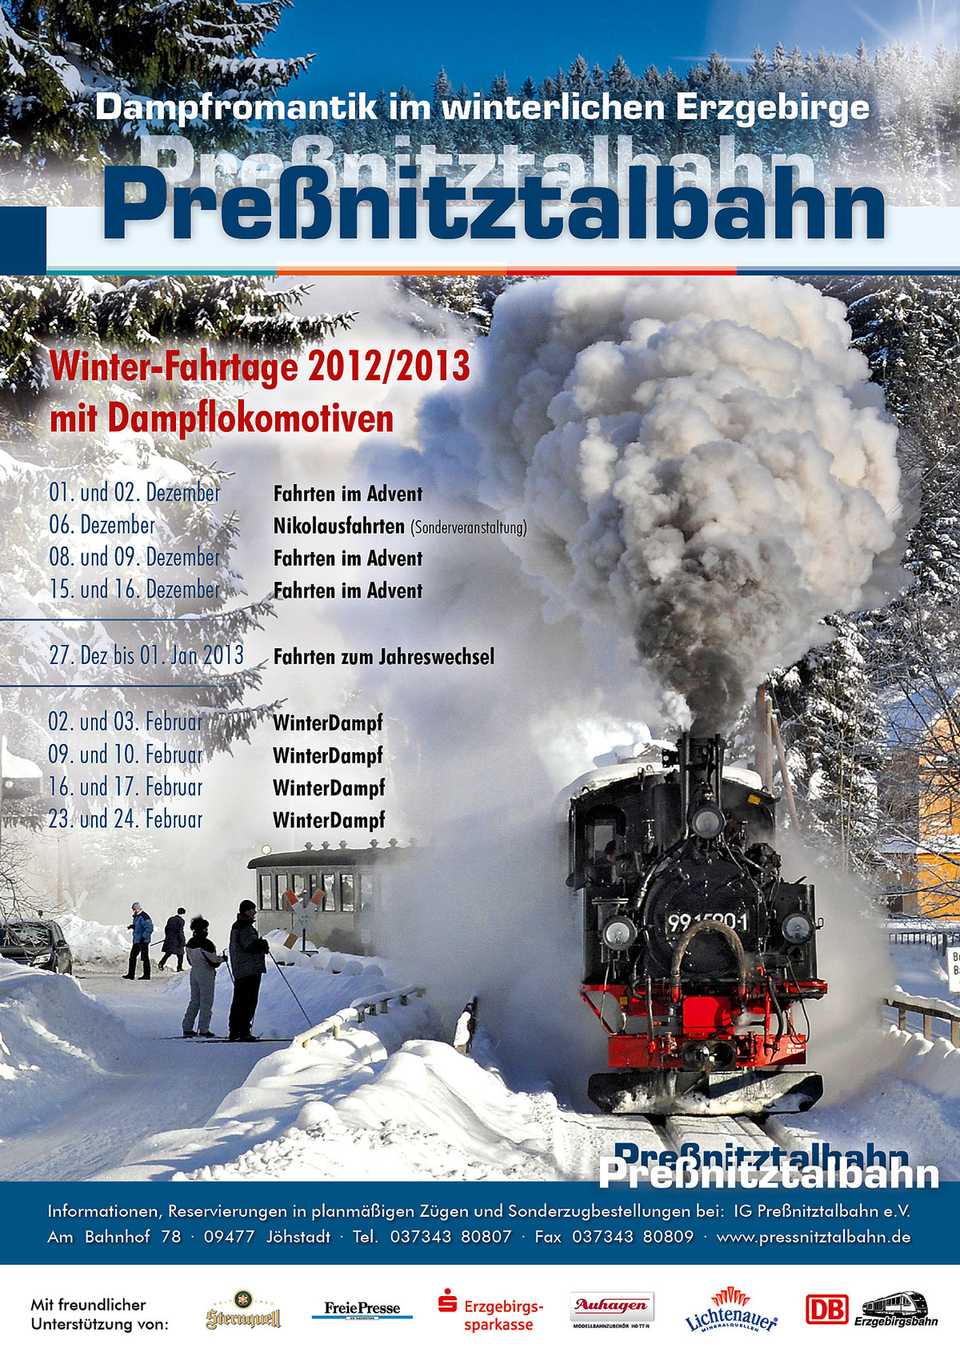 Veranstaltungsposter der Preßnitztalbahn 1. Dezember 2012 bis 24. Februar 2013